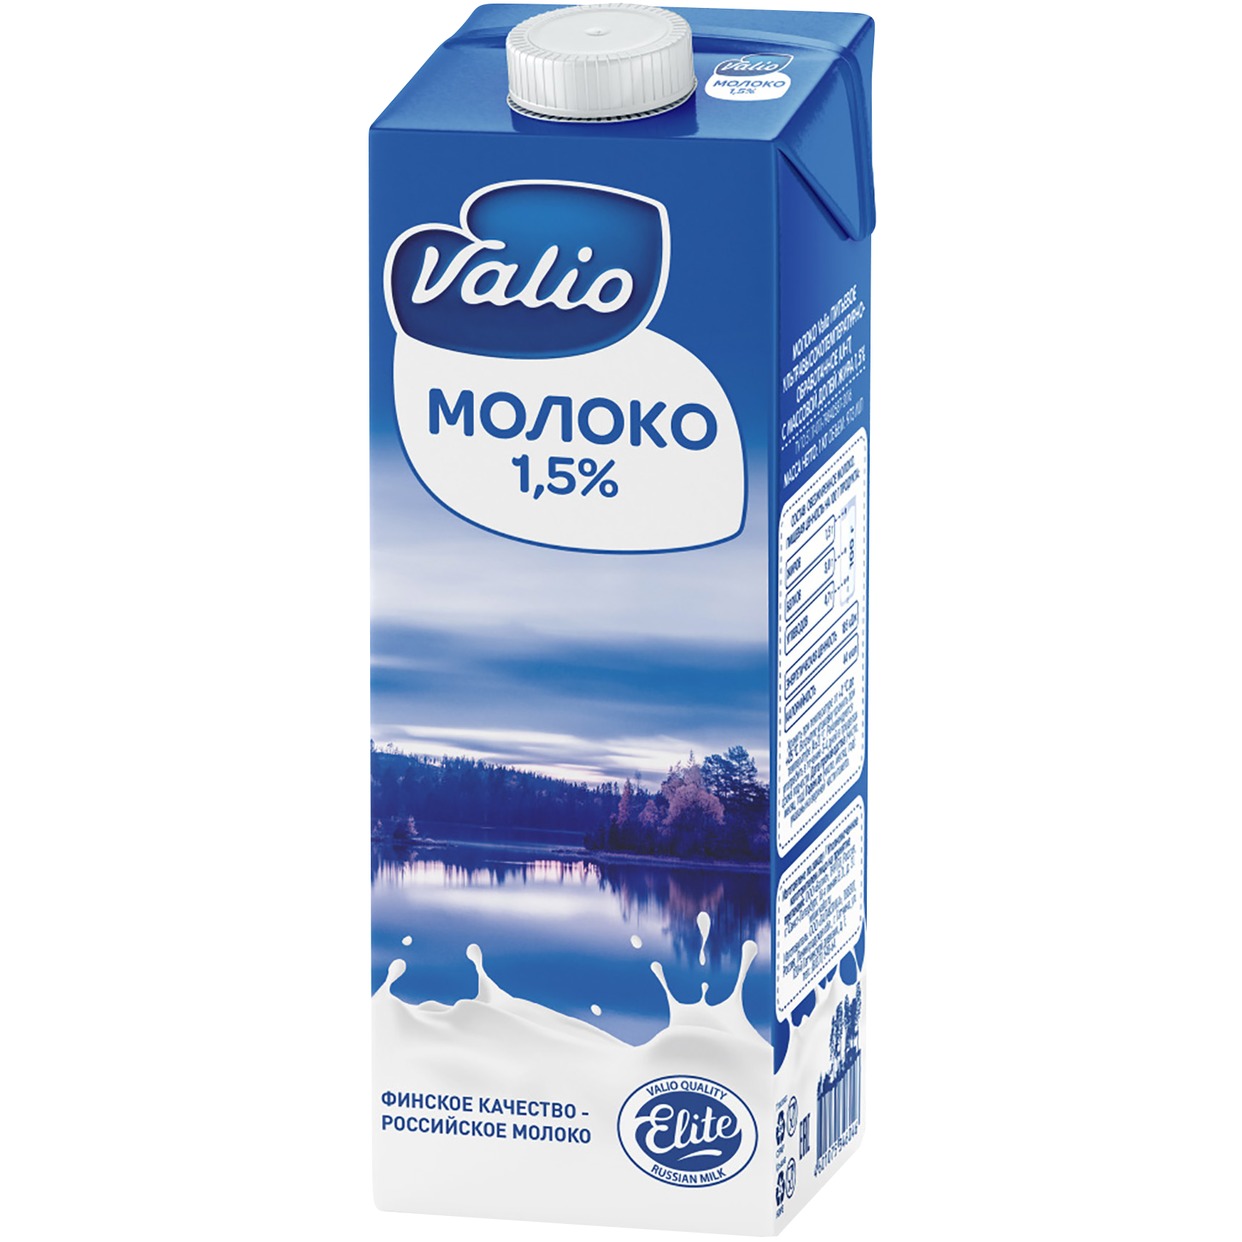 Молоко Valio ультрапастеризованное 1.5% 973 мл по акции в Пятерочке